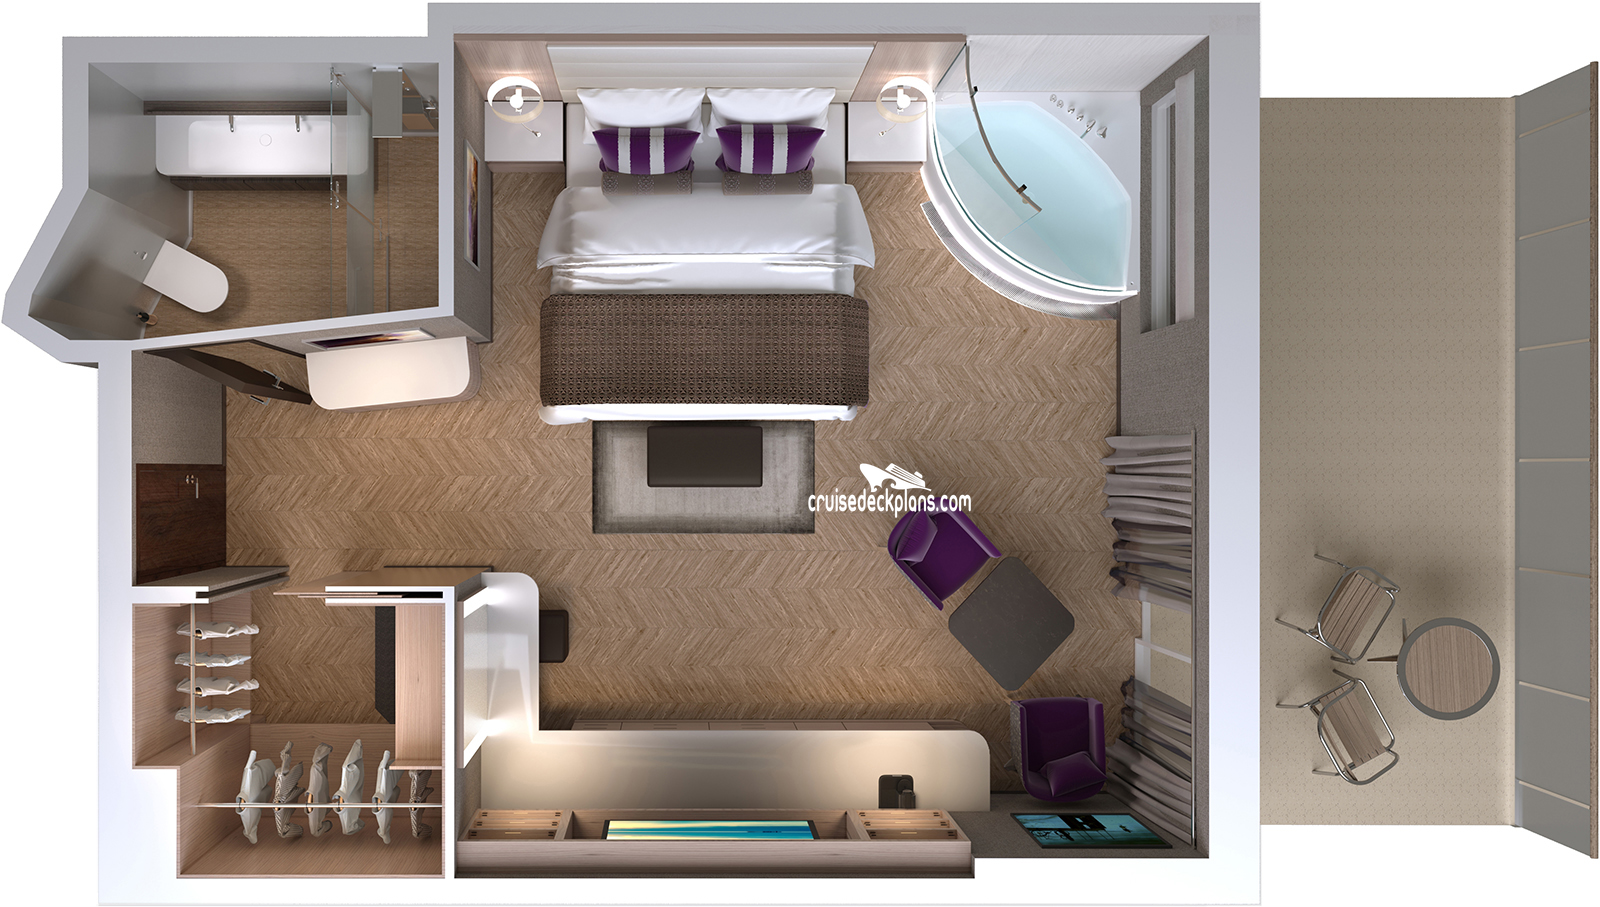 Norwegian Encore Spa Suite cabin floor plan